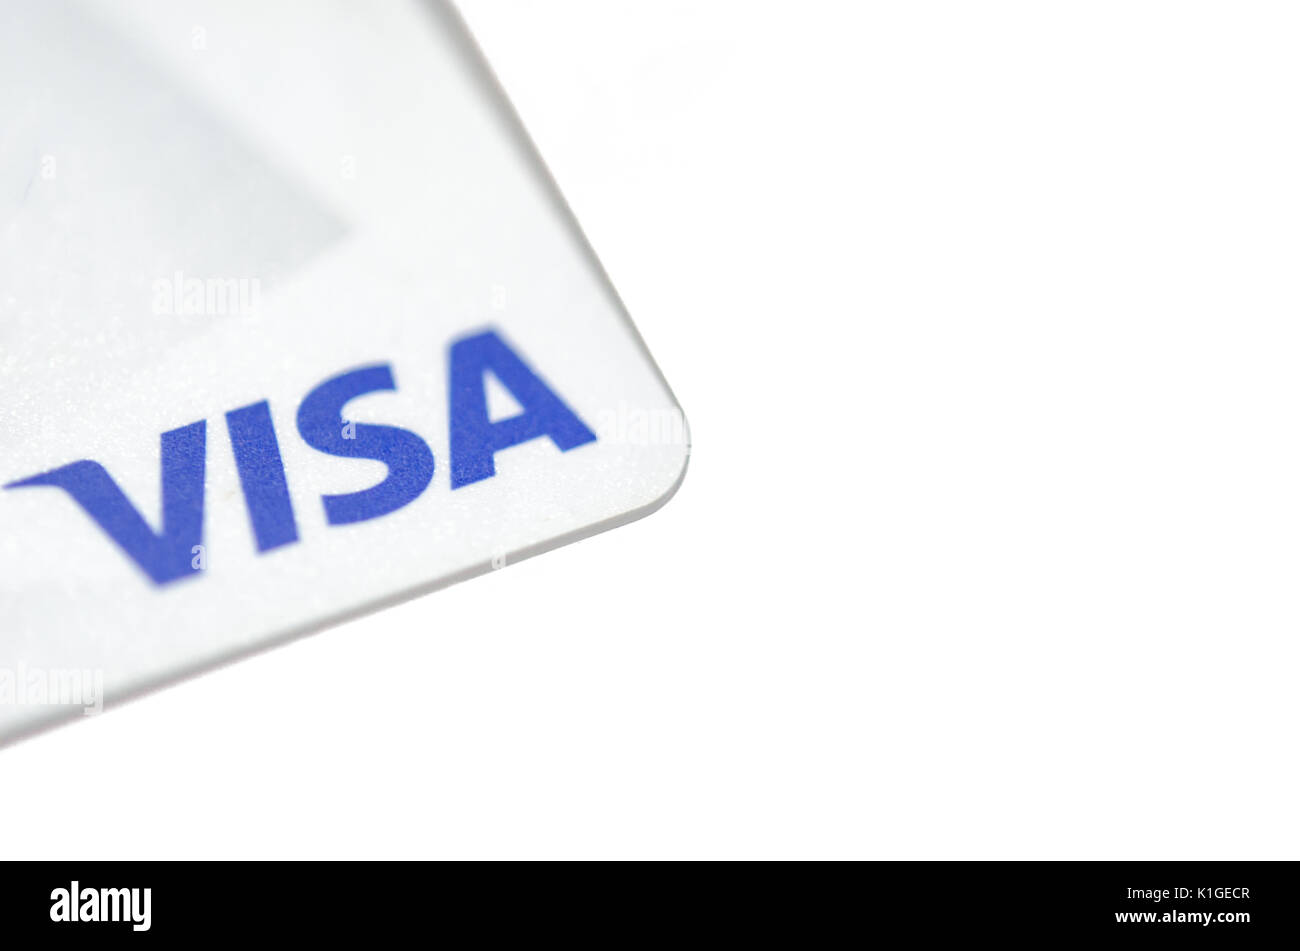 La carte Visa Electron sur fond blanc Photo Stock - Alamy